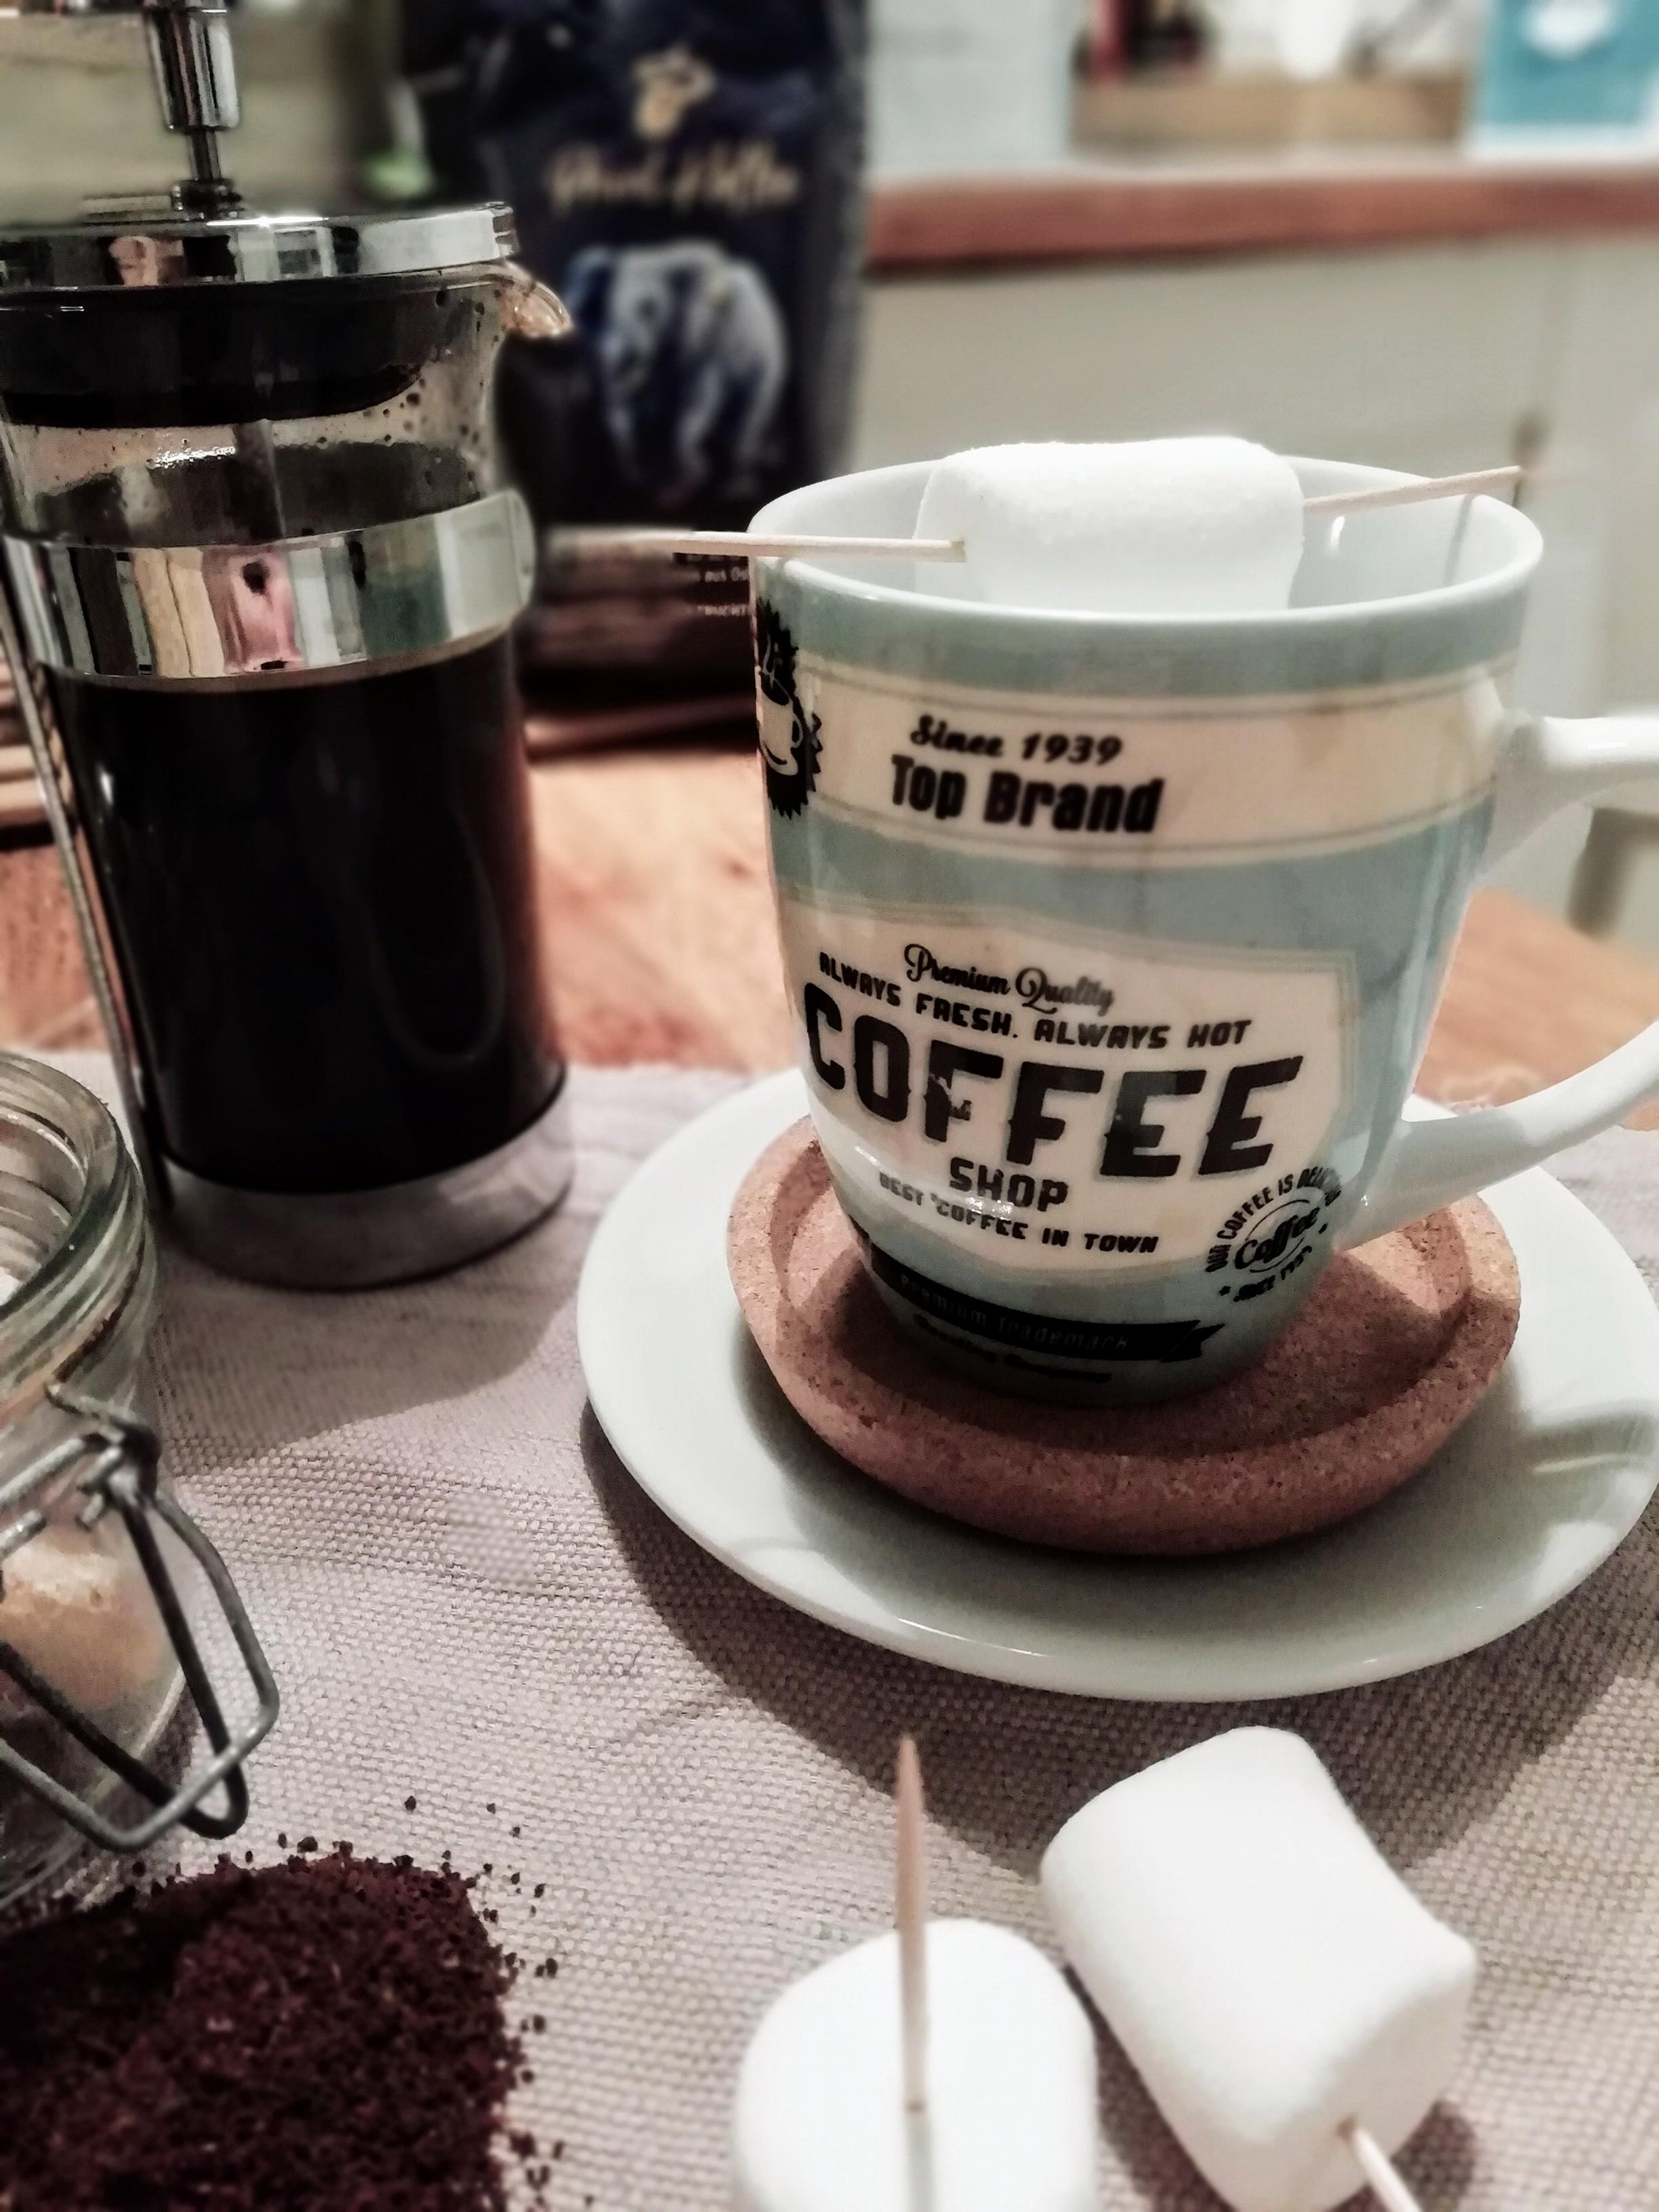 Die French Press macht den Kaffee, als Topping gibt es Marshmallows #coffeelover #foodchallenge